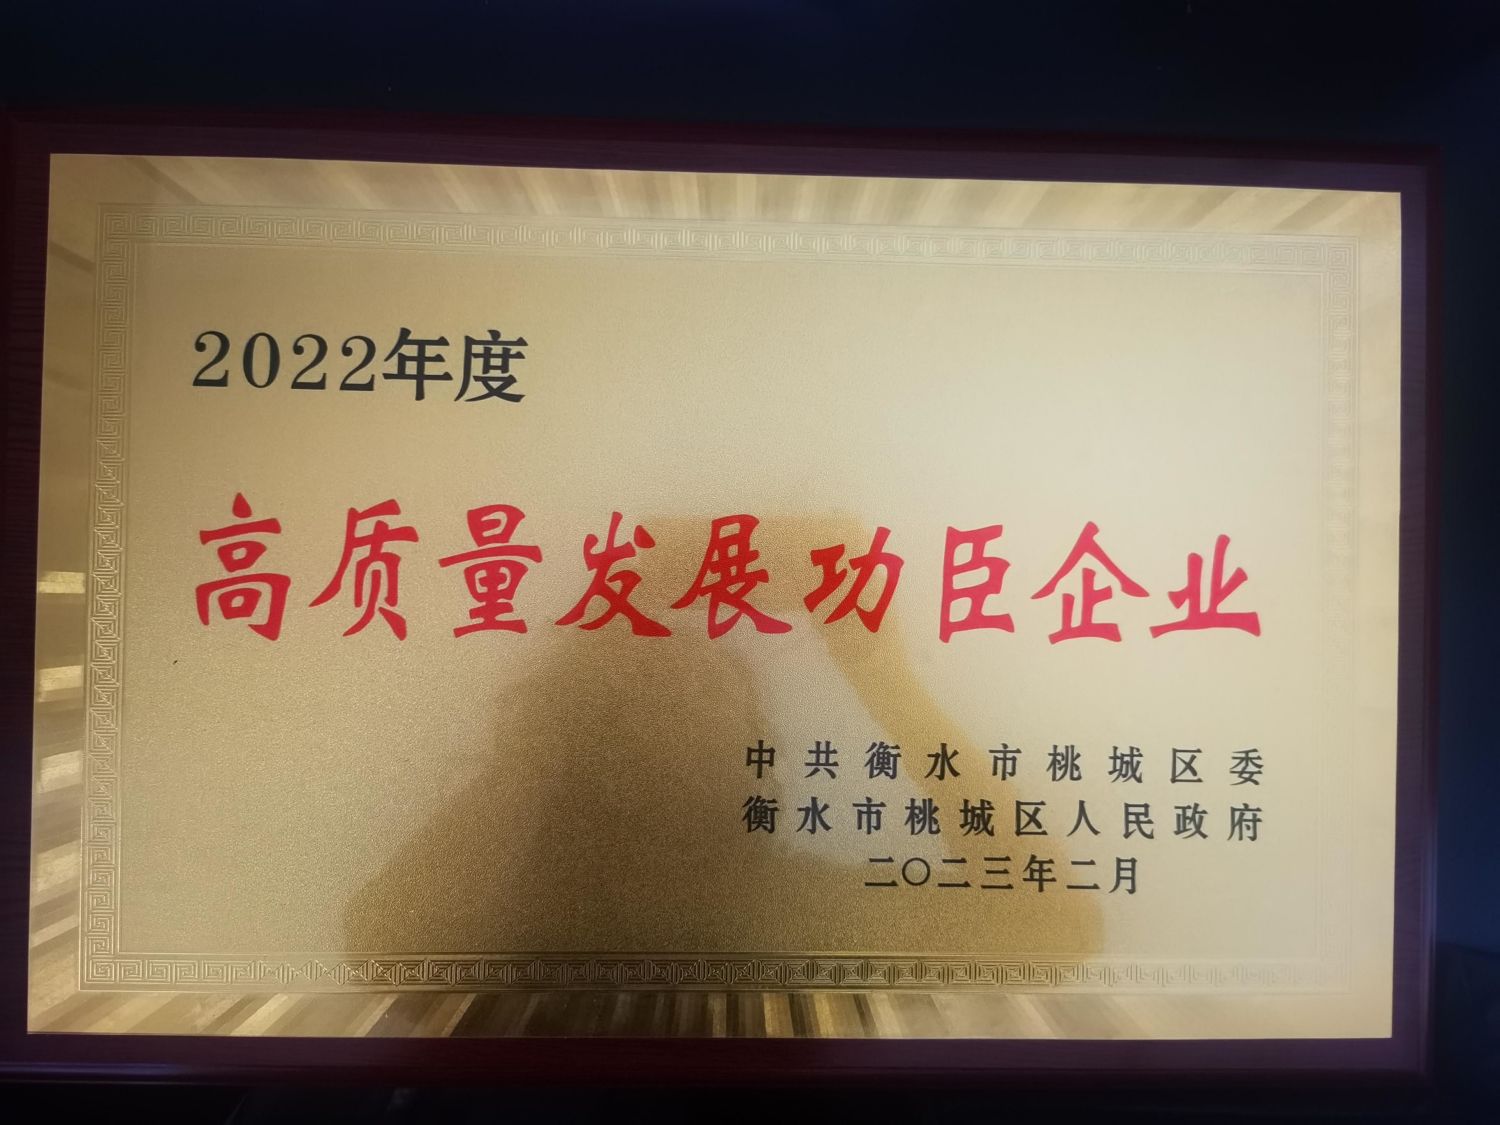 Xin chúc mừng công ty của chúng tôi（Công ty TNHH Thương mại Xuất nhập khẩu Hengshui Tianqin） đã giành được giải doanh nghiệp anh hùng phát triển chất lượng cao vào năm 2022.